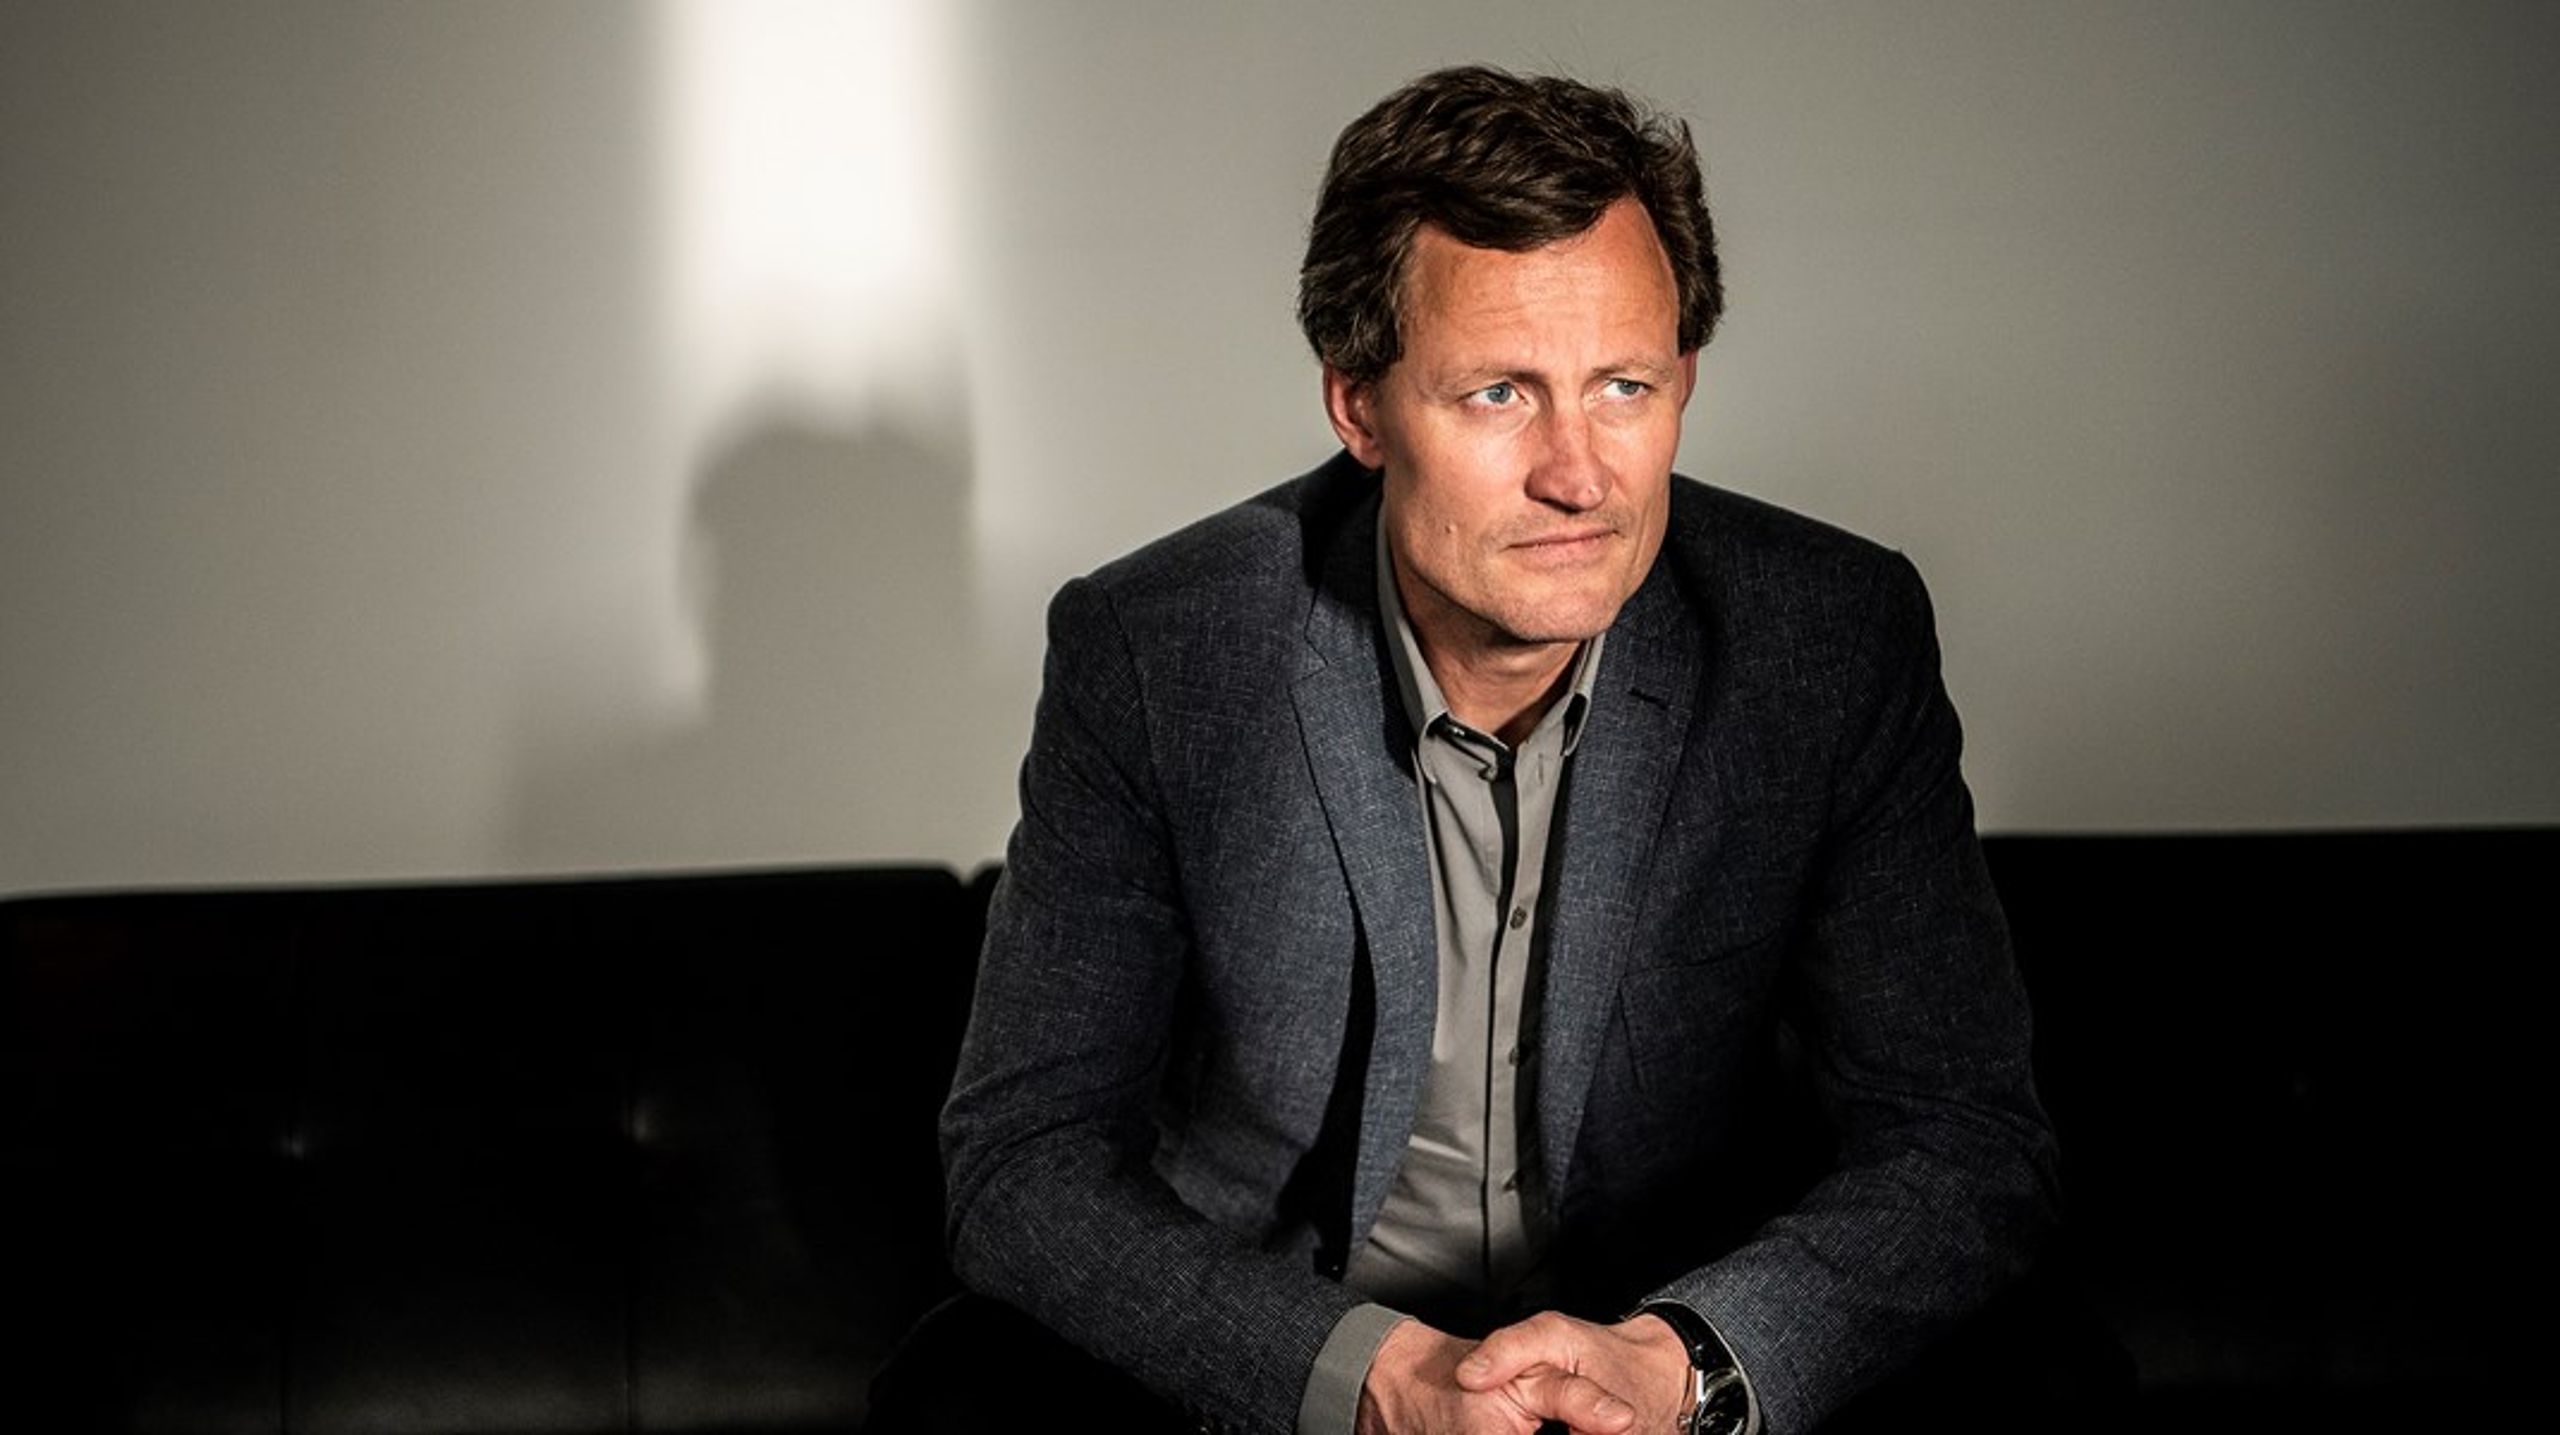 Pierre Collignon var fra 2012 til 2016 journalistisk chefredaktør på Jyllands-Posten, og tiltræder som chefredaktør på Berlingske efter seks år som debatredaktør.